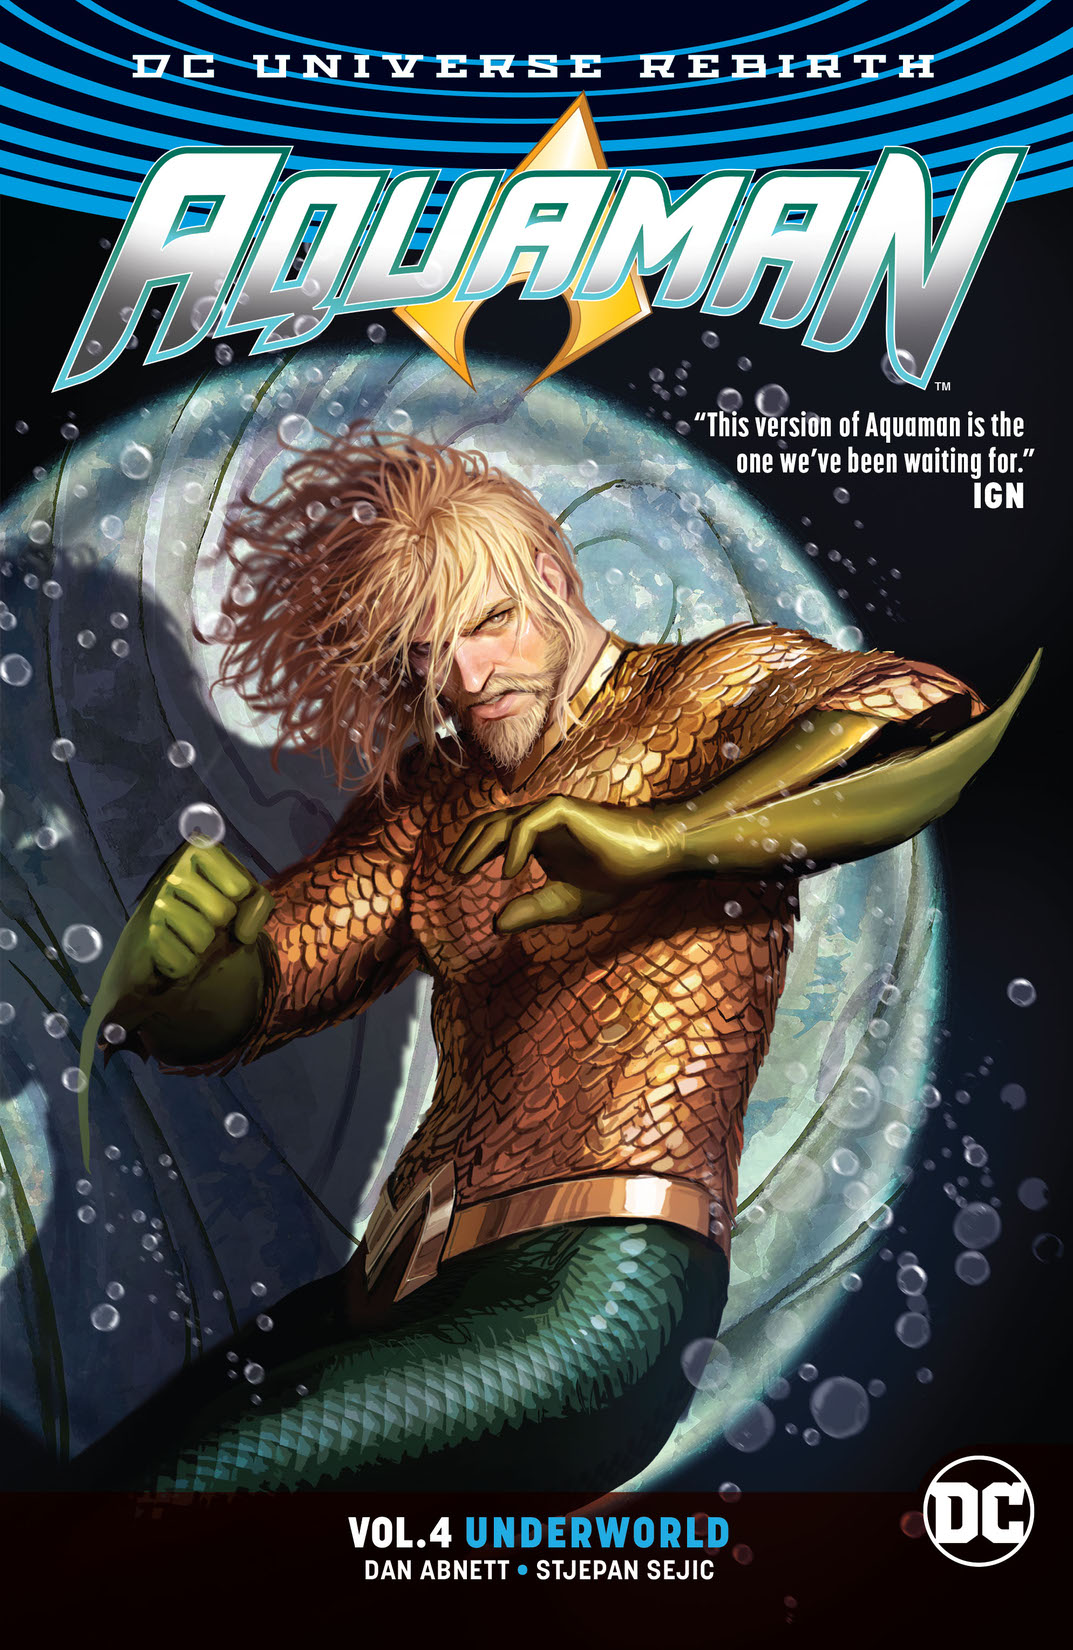 Aquaman Vol. 4: Underworld preview images